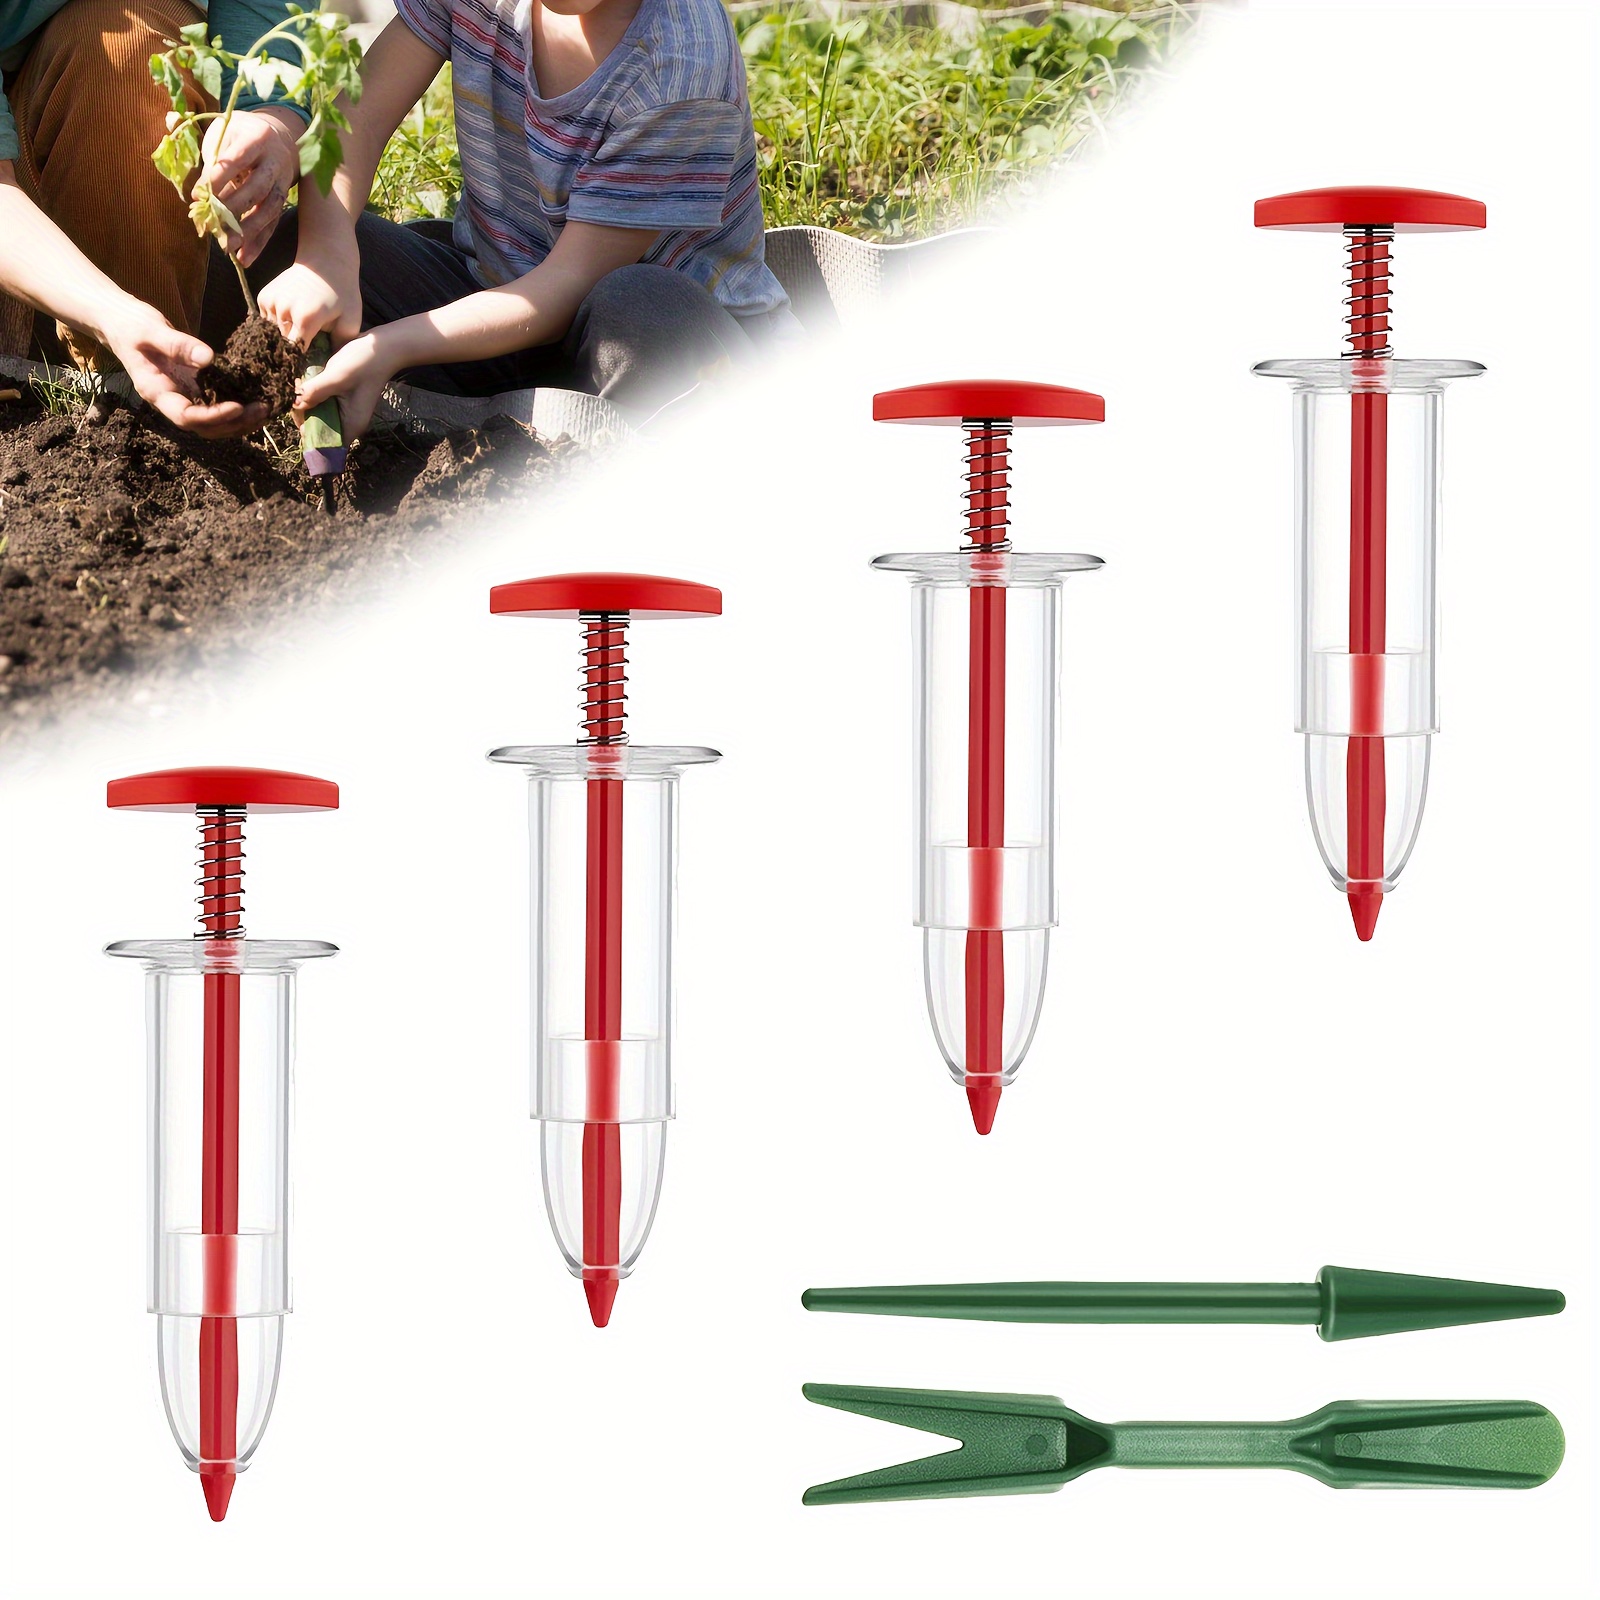 Atyhao Handsämaschine, 10 Stück Gartensämaschine, 5 Verschiedene  Einstellungen, Wiederverwendbarer Samenspender, Samenpflanzer, Werkzeug Zum